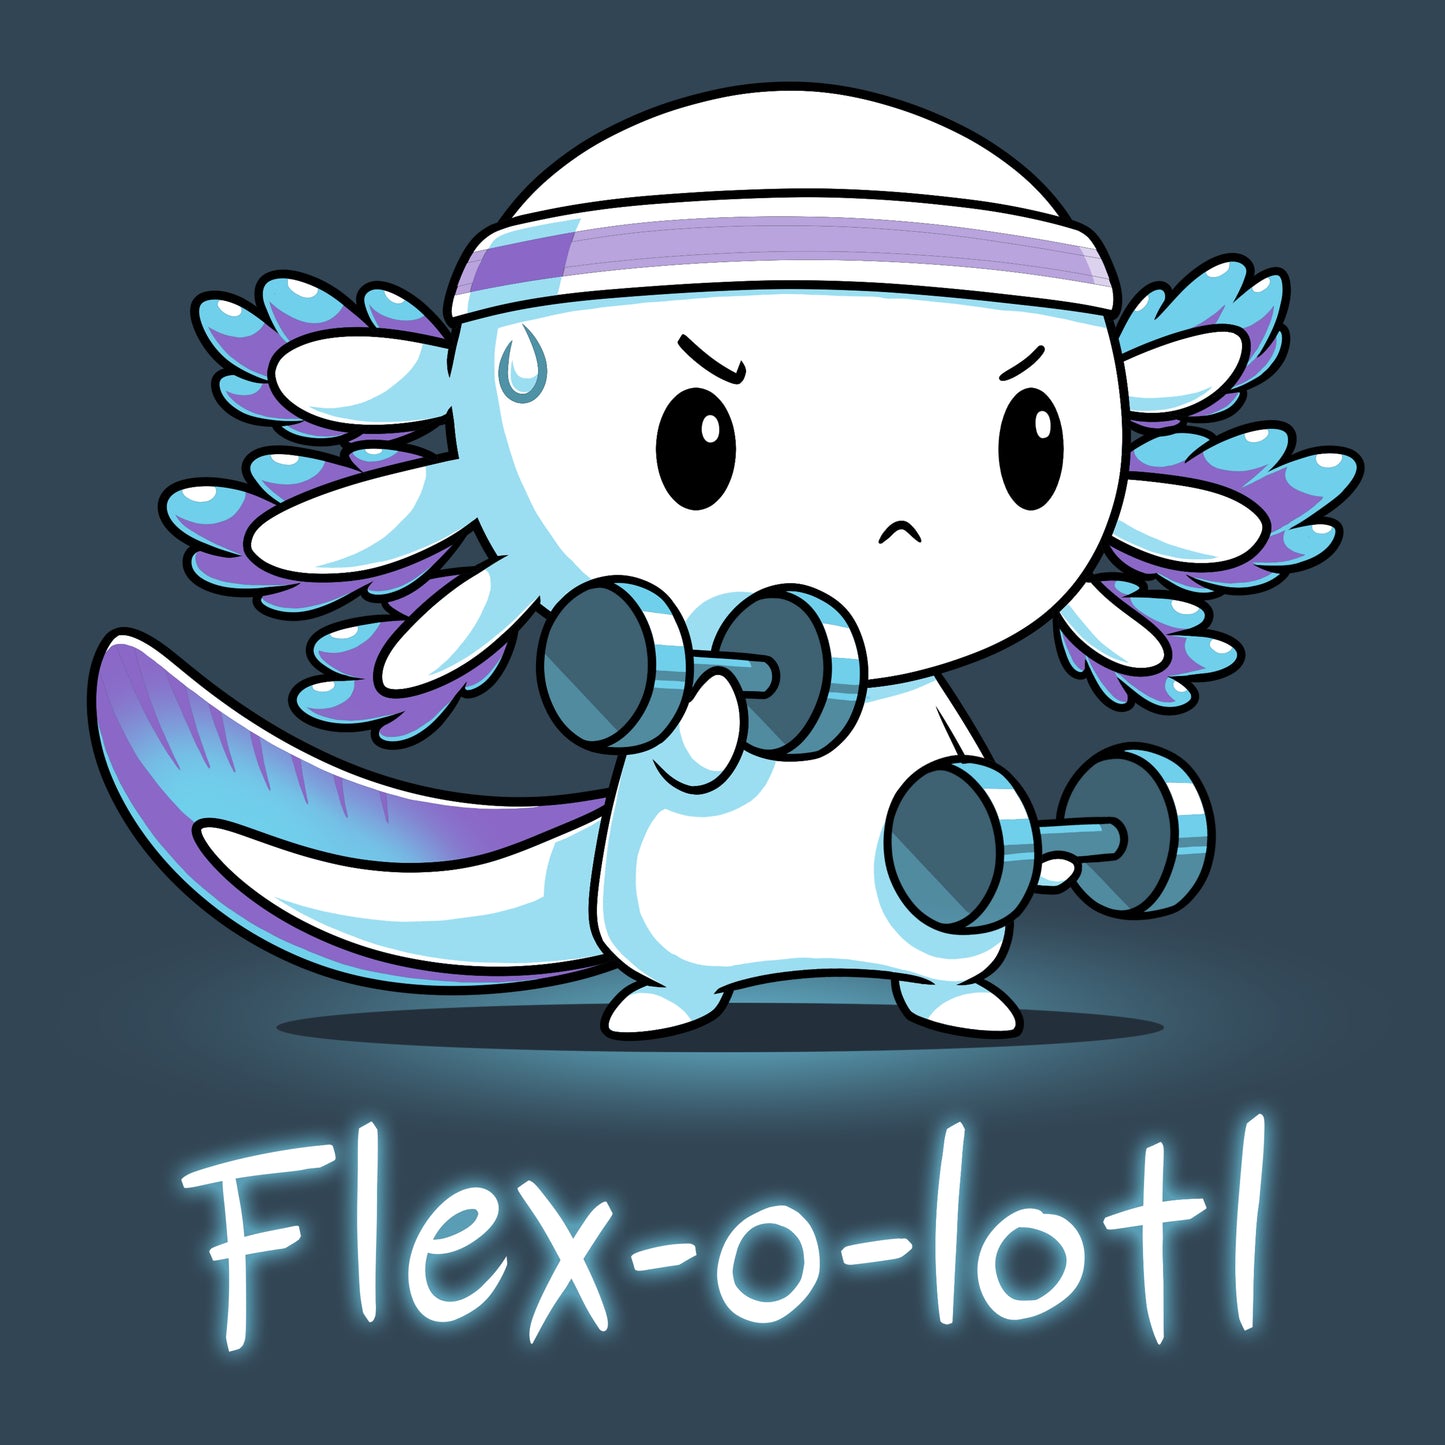 Flex-o-lotl is a fit muscle TeeTurtle.